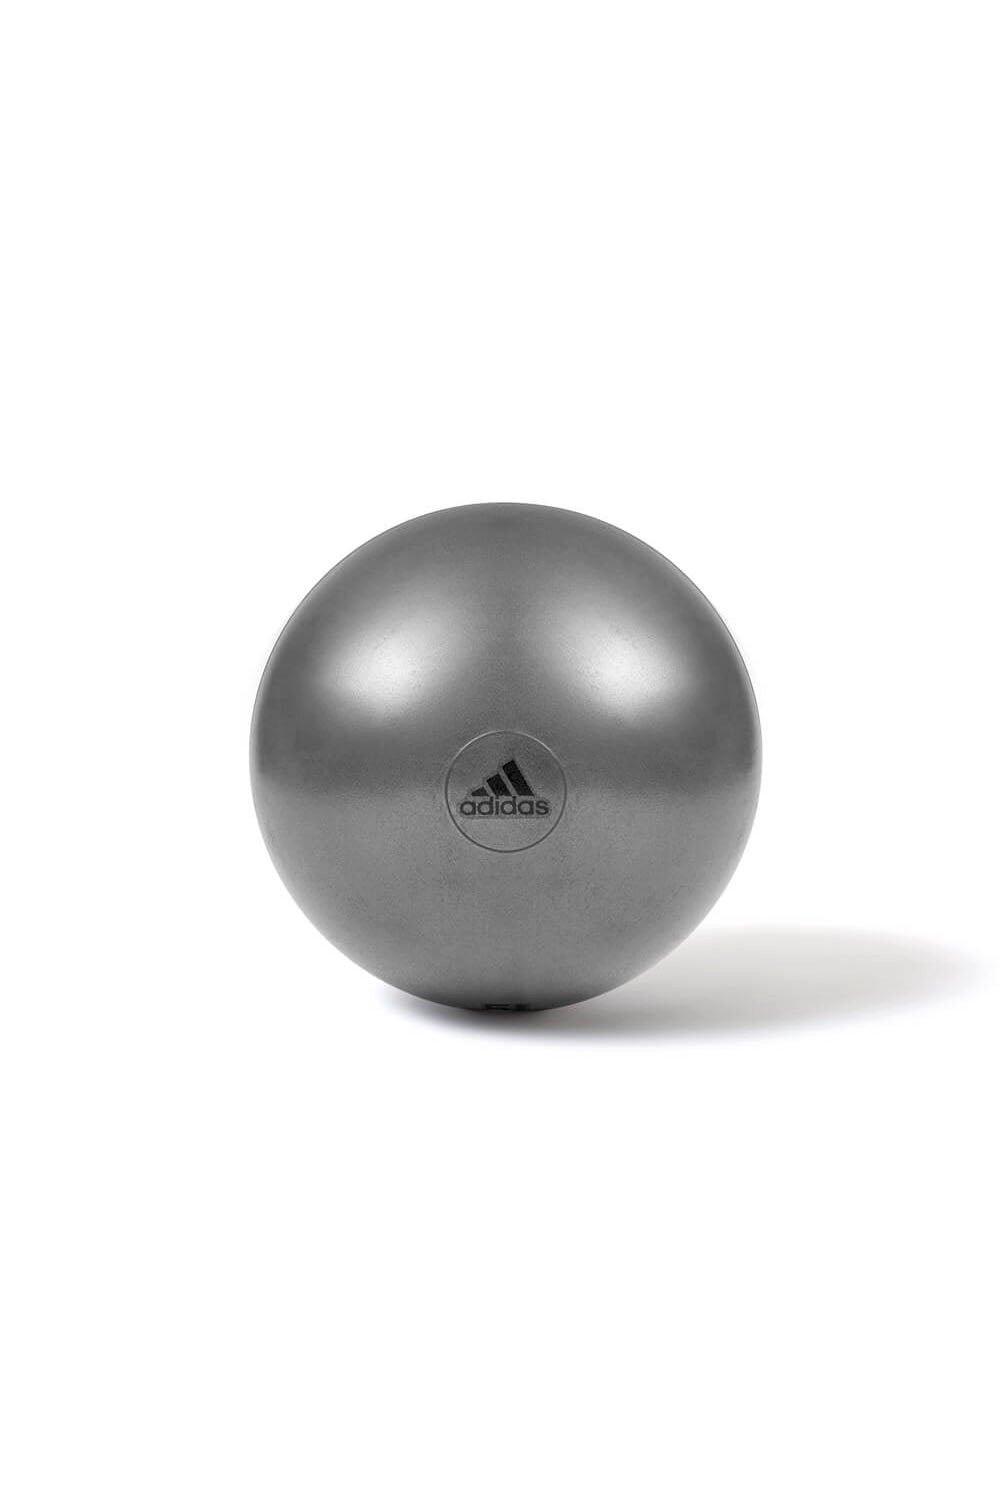 adidas Gym Balance Ball, Grey, 75cm